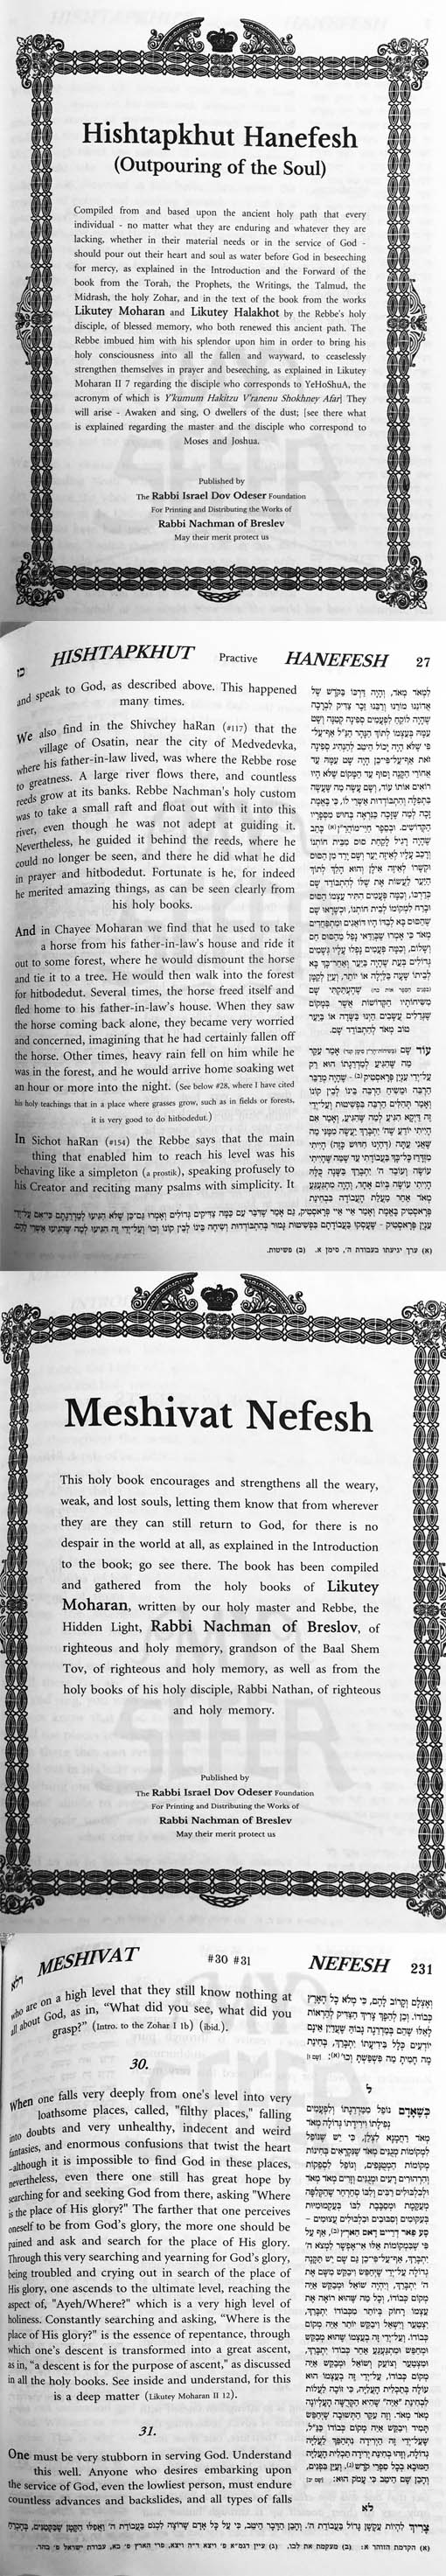 Hishtapkhut HaNefesh - Meshivat Nefesh